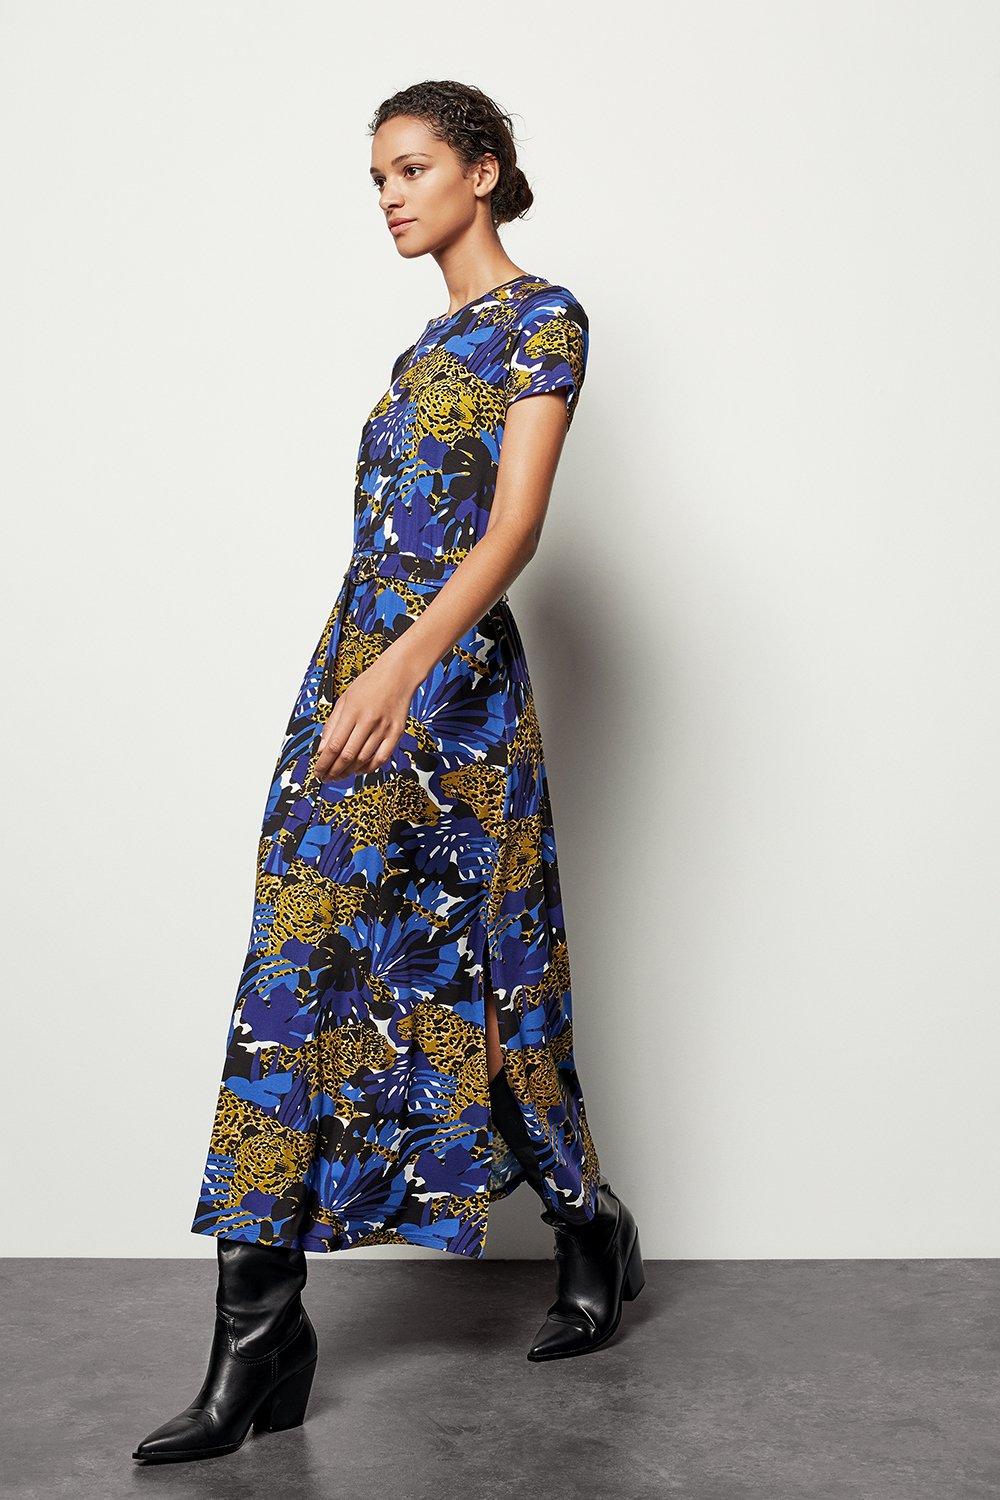 leopard print dress blue